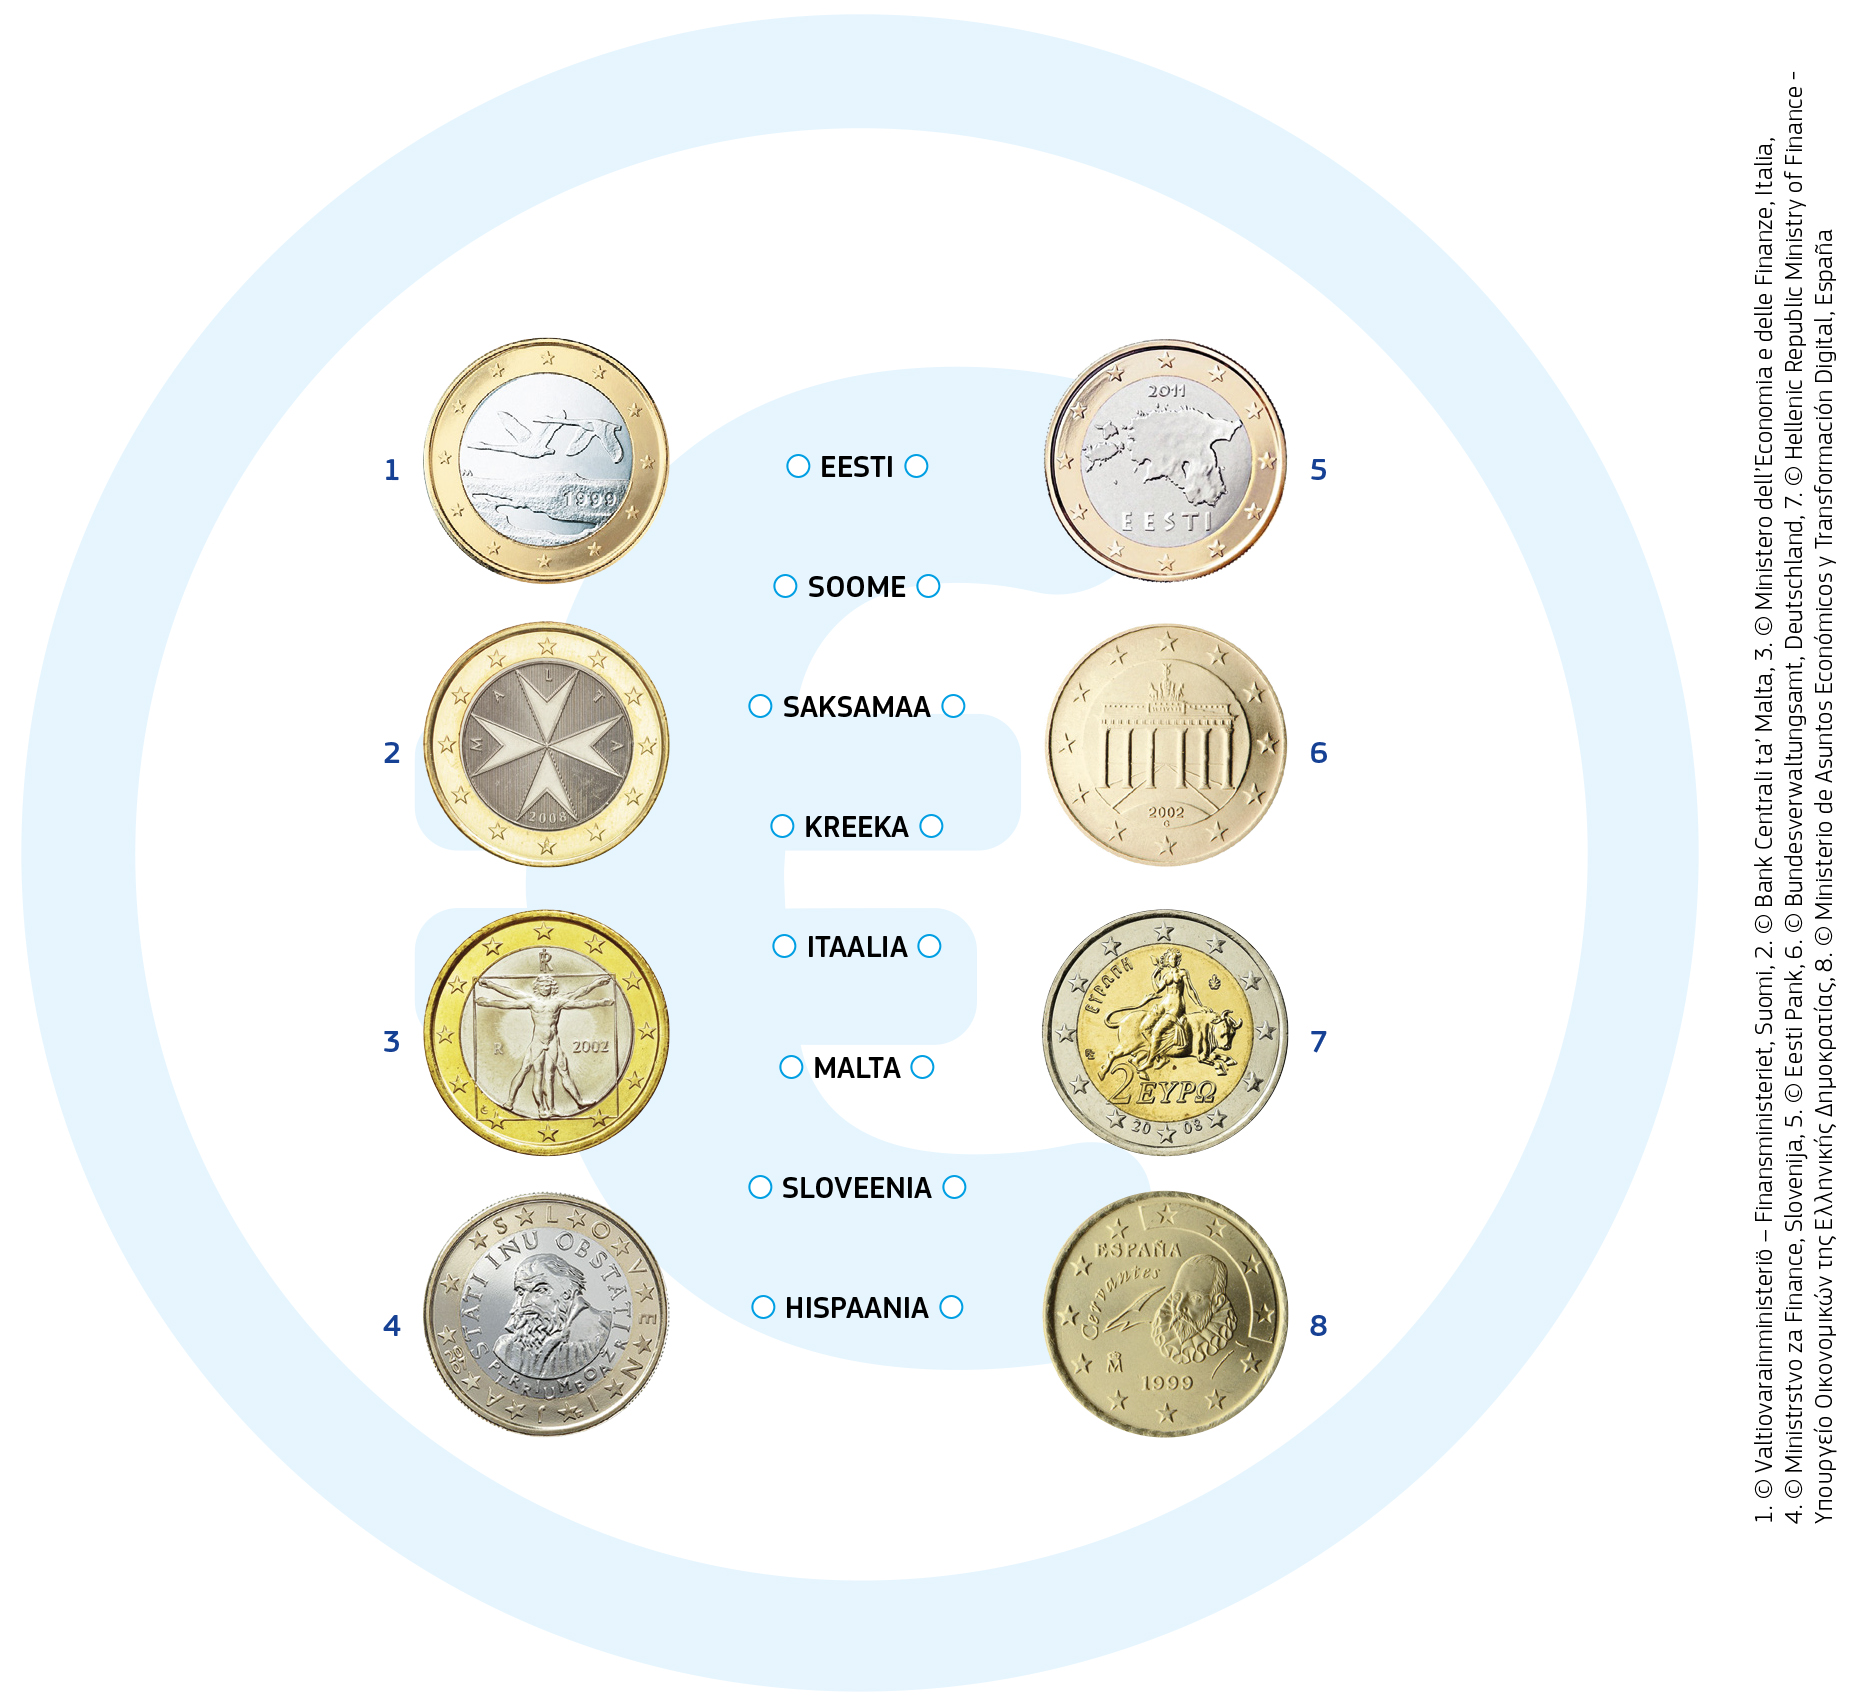 Kõigi euromüntide ühel küljel on kujutatud Euroopa kaart ja see on kõigis liikmesriikides ühesugune. Teine külg on igal riigil oma kujundusega. Siin on mõned näited: 
Soome üheeurosel mündil on kaks lendavat luike.
Malta üheeurostel ja kaheeurostel müntidel on kujutatud Malta ristiks nimetatavat embleemi.
Itaalia üheeurostel müntidel on kujutatud Leonardo da Vinci kuulus joonistus, mis kujutab inimkeha ideaalset proportsiooni.
Kreeka kaheeurone münt kujutab Europet, kelle röövis härja kuju võtnud Zeus. Europe on tegelane Kreeka mütoloogiast, kelle järgi Euroopa nime sai.